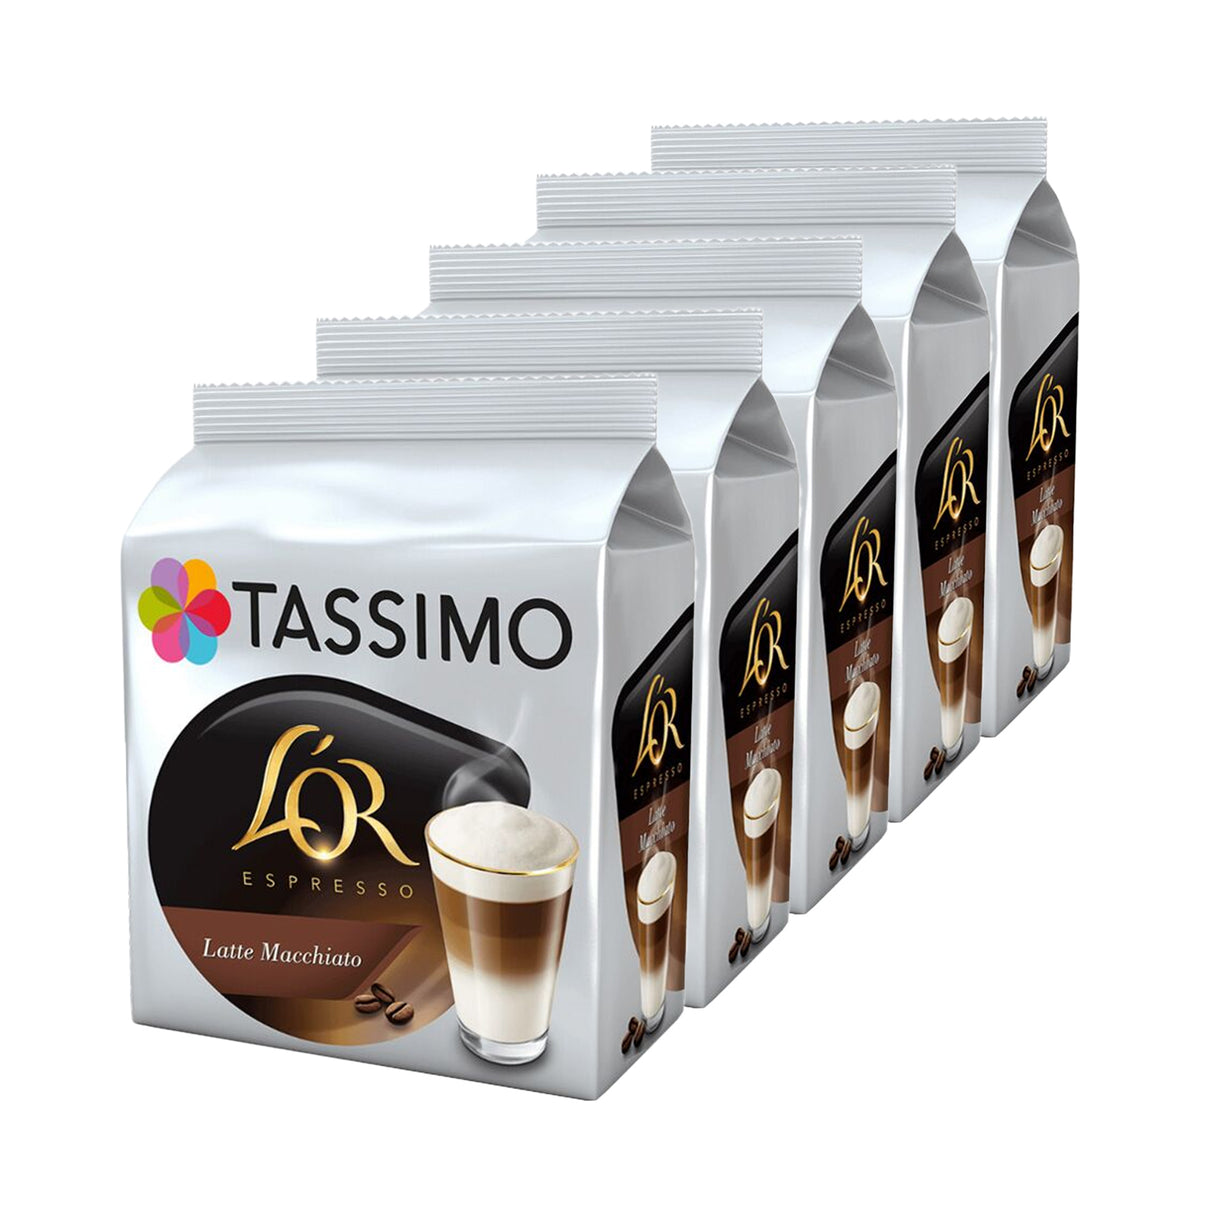 Tassimo L'OR Espresso Latte Macchiato 5pack